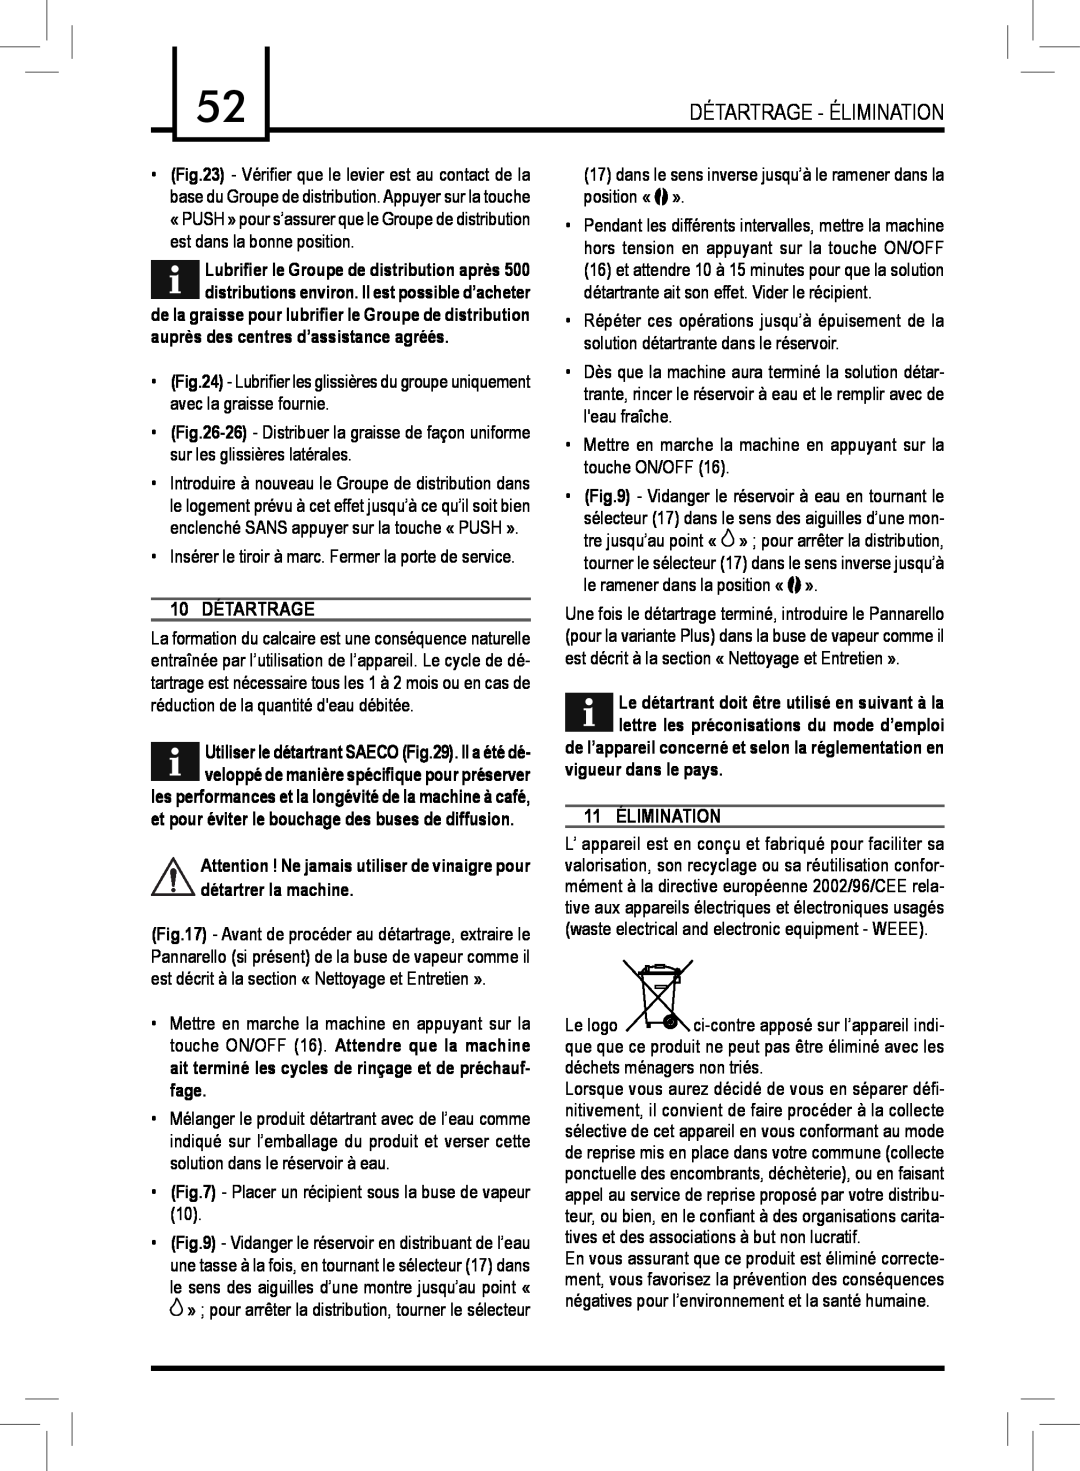 Saeco Coffee Makers PLUS manual 10 DÉTARTRAGE, 11 ÉLIMINATION, auprès des centres d’assistance agréés, vigueur dans le pays 